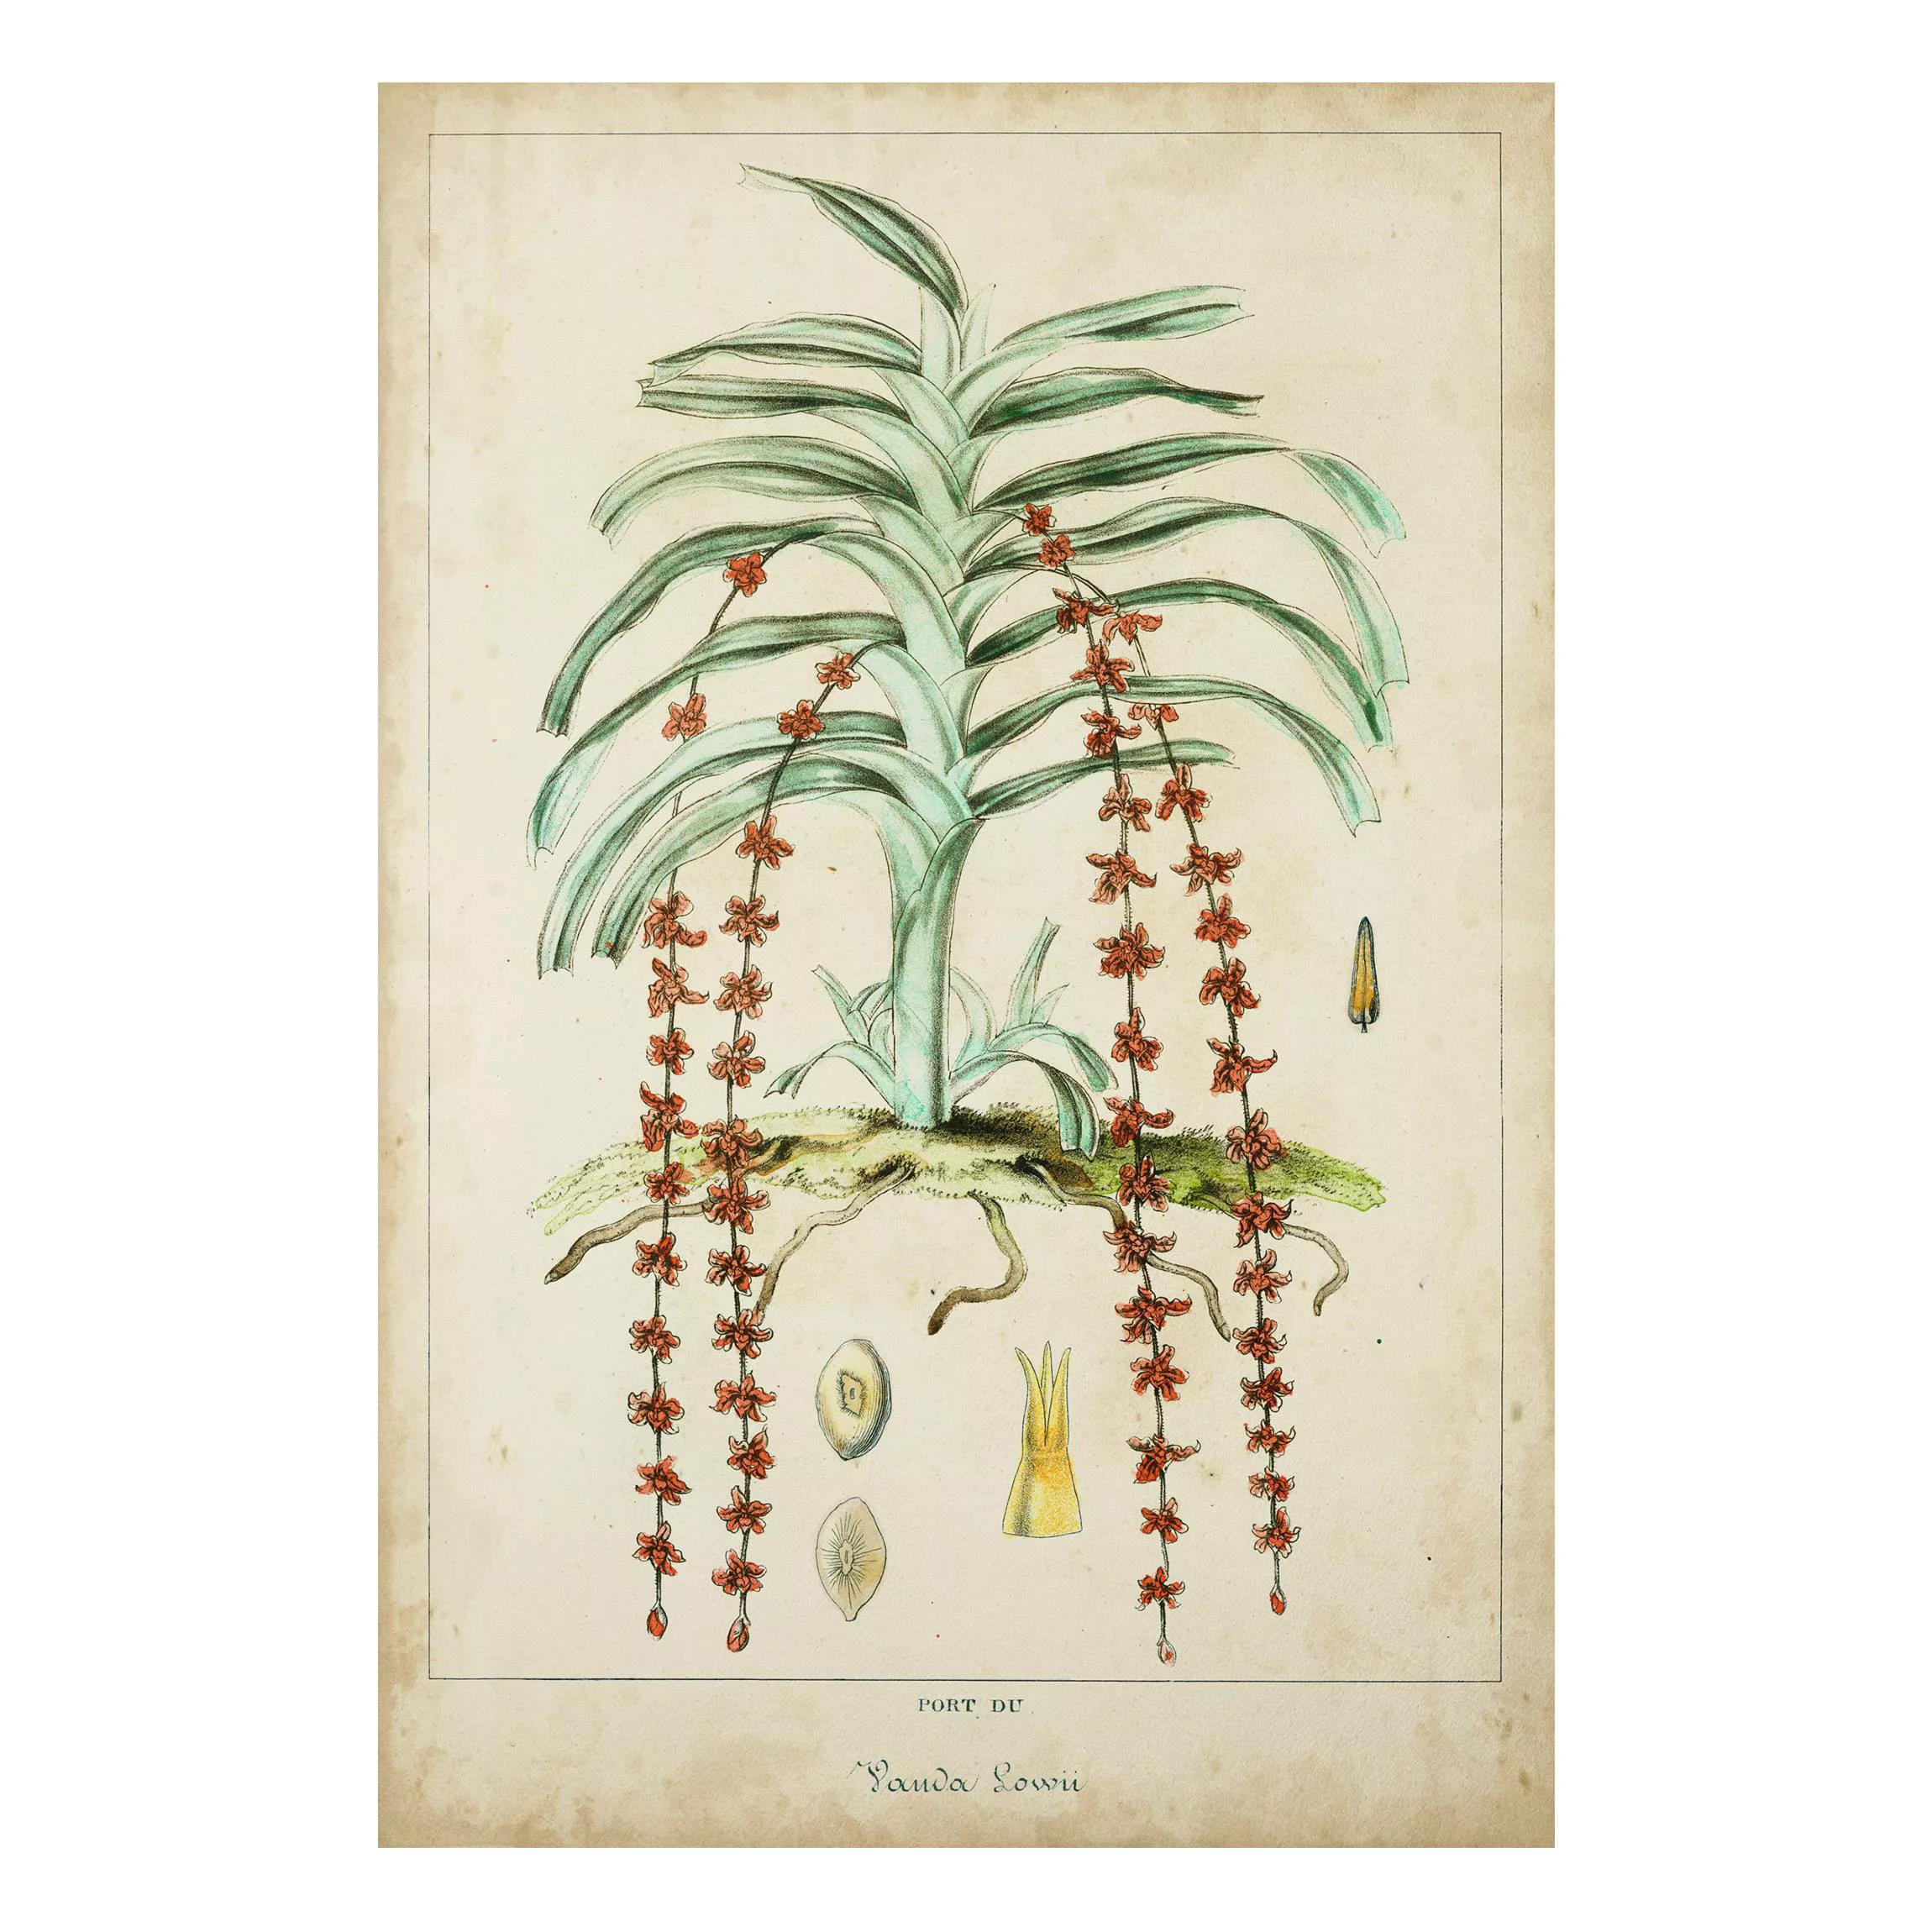 Forexbild Blumen - Hochformat Vintage Lehrtafel Exotische Palmen IV günstig online kaufen